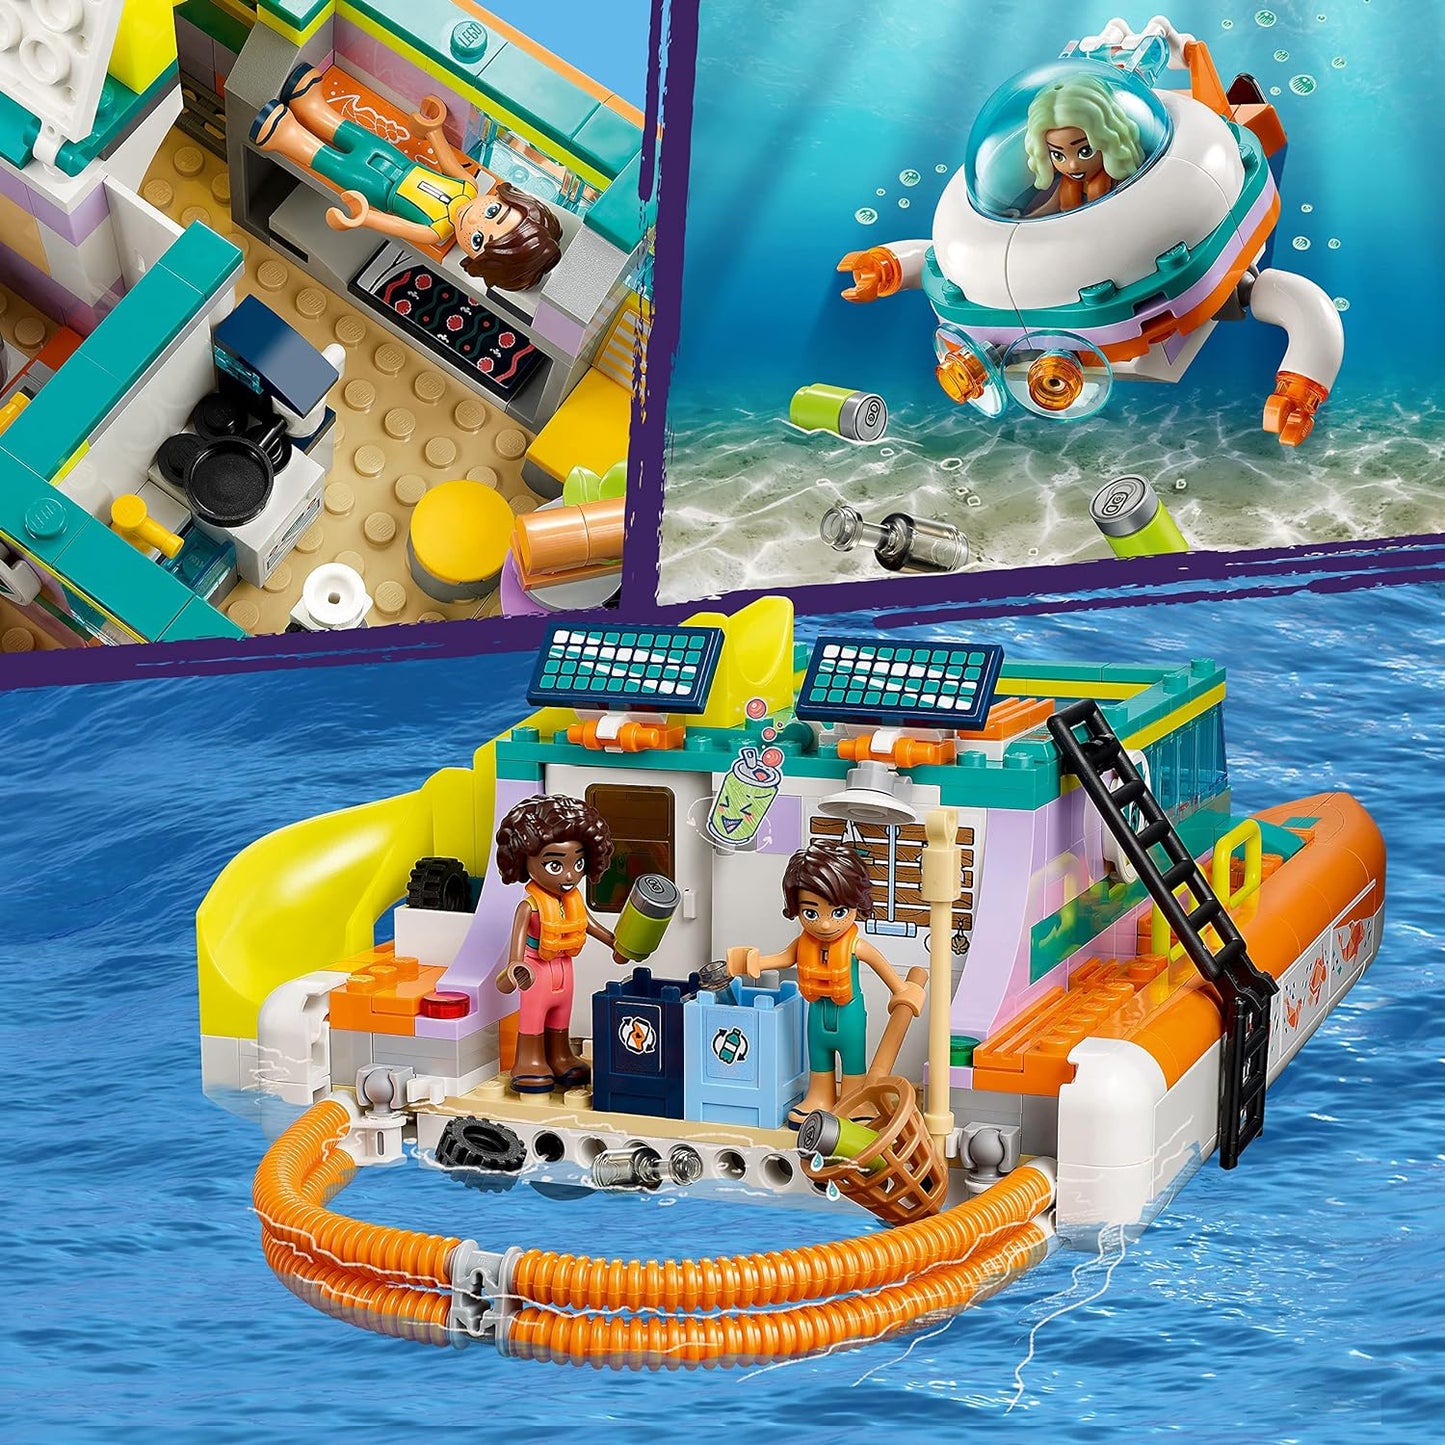 LEGO Friends - Sea Rescue Boat 41734